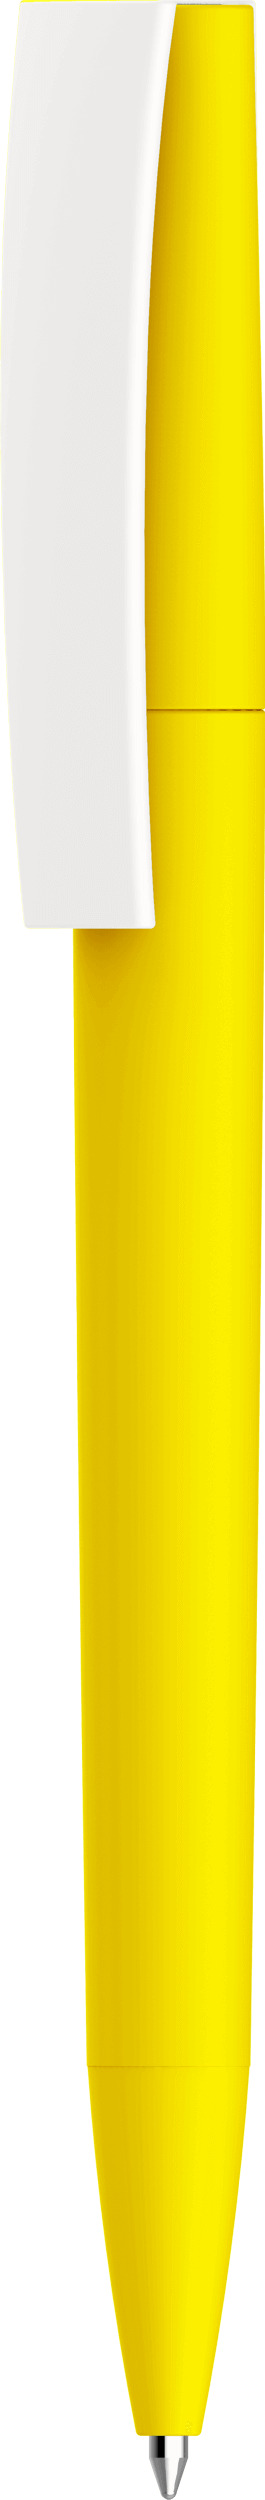 Ручка Zeta Soft, жёлтая